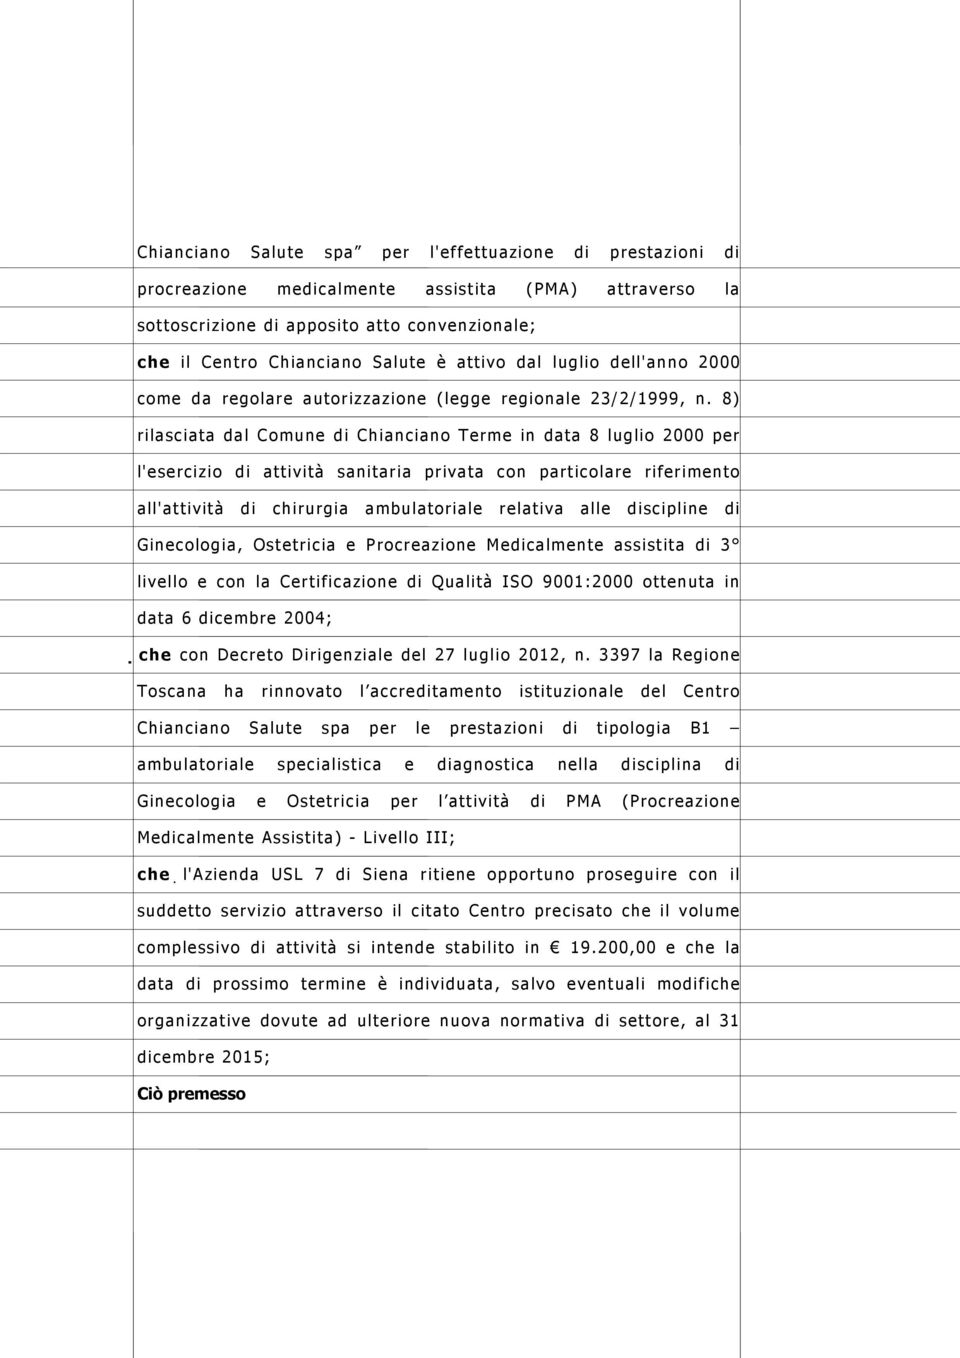 8) rilasciata dal Comune di Chianciano Terme in data 8 luglio 2000 per l'esercizio di attività sanitaria privata con particolare riferimento all'attività di chirurgia ambulatoriale relativa alle